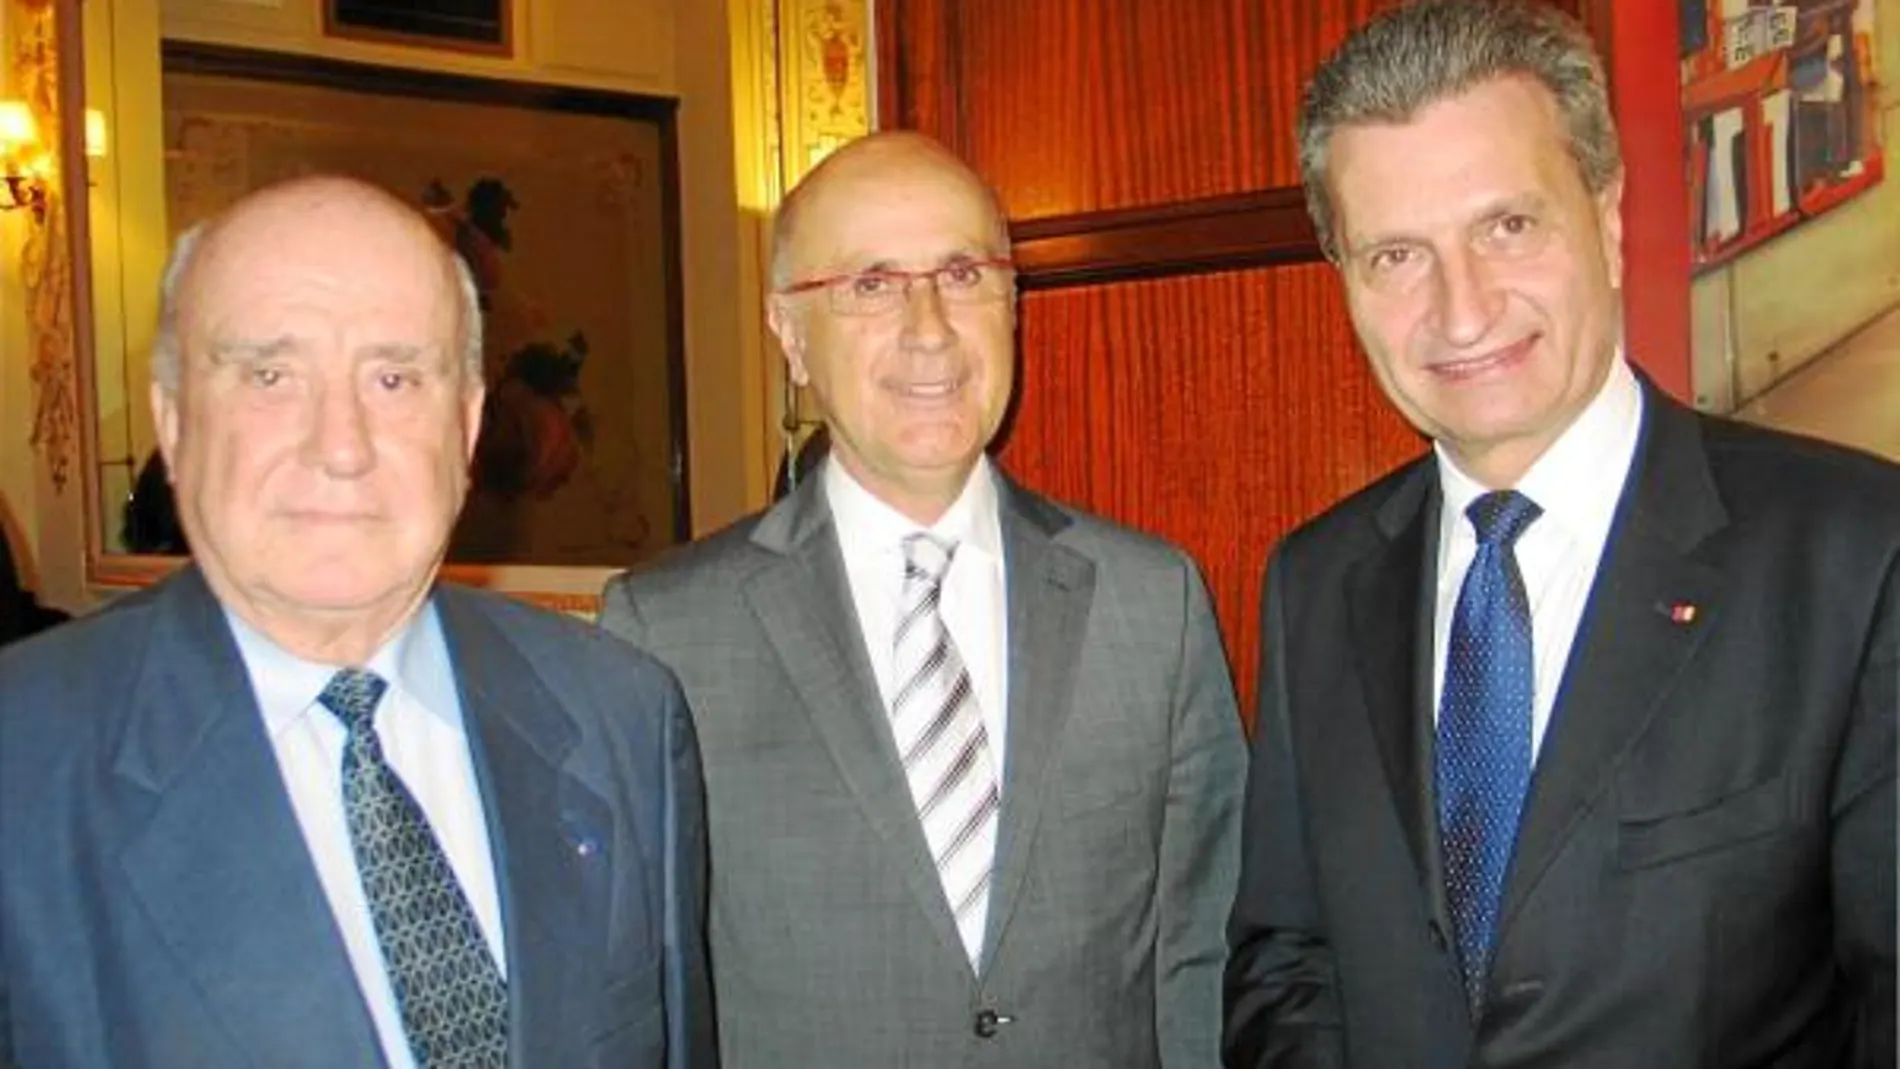 Llibert Quatrecasas, Josep Antoni Duran Lleida y Gunter Oettinger